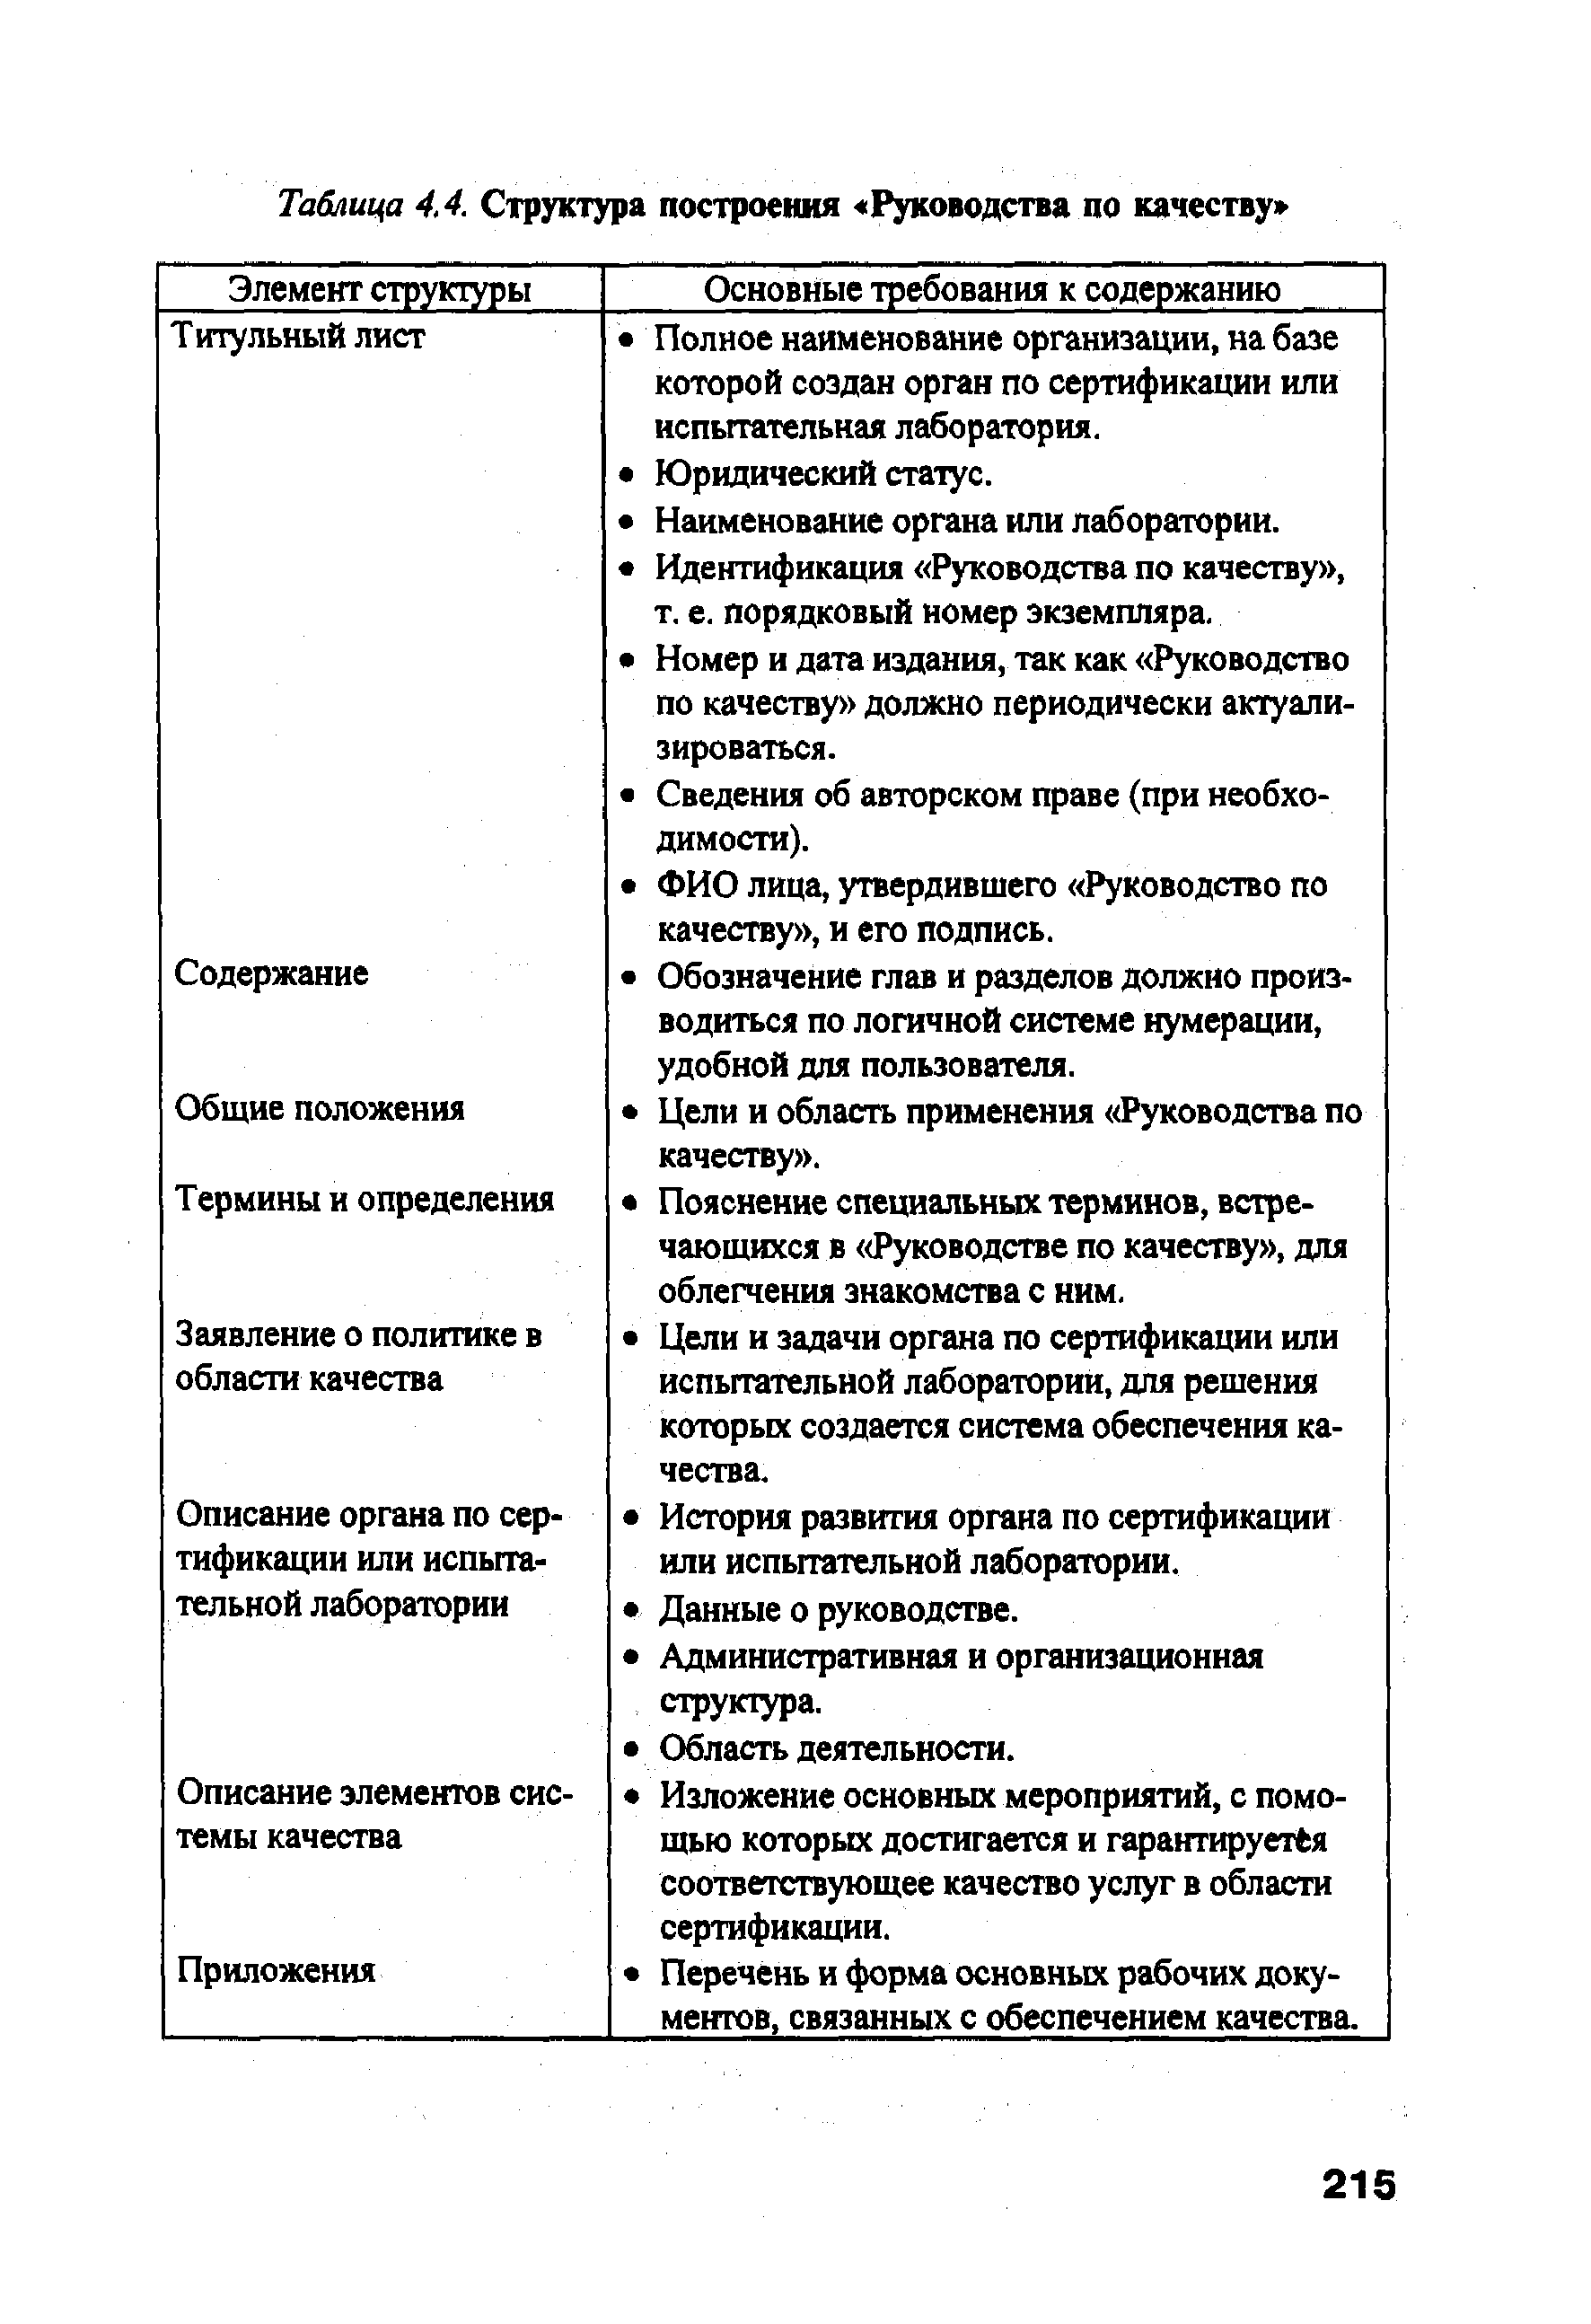 Таблица 4,4. Структура построения Руководства по качеству 
